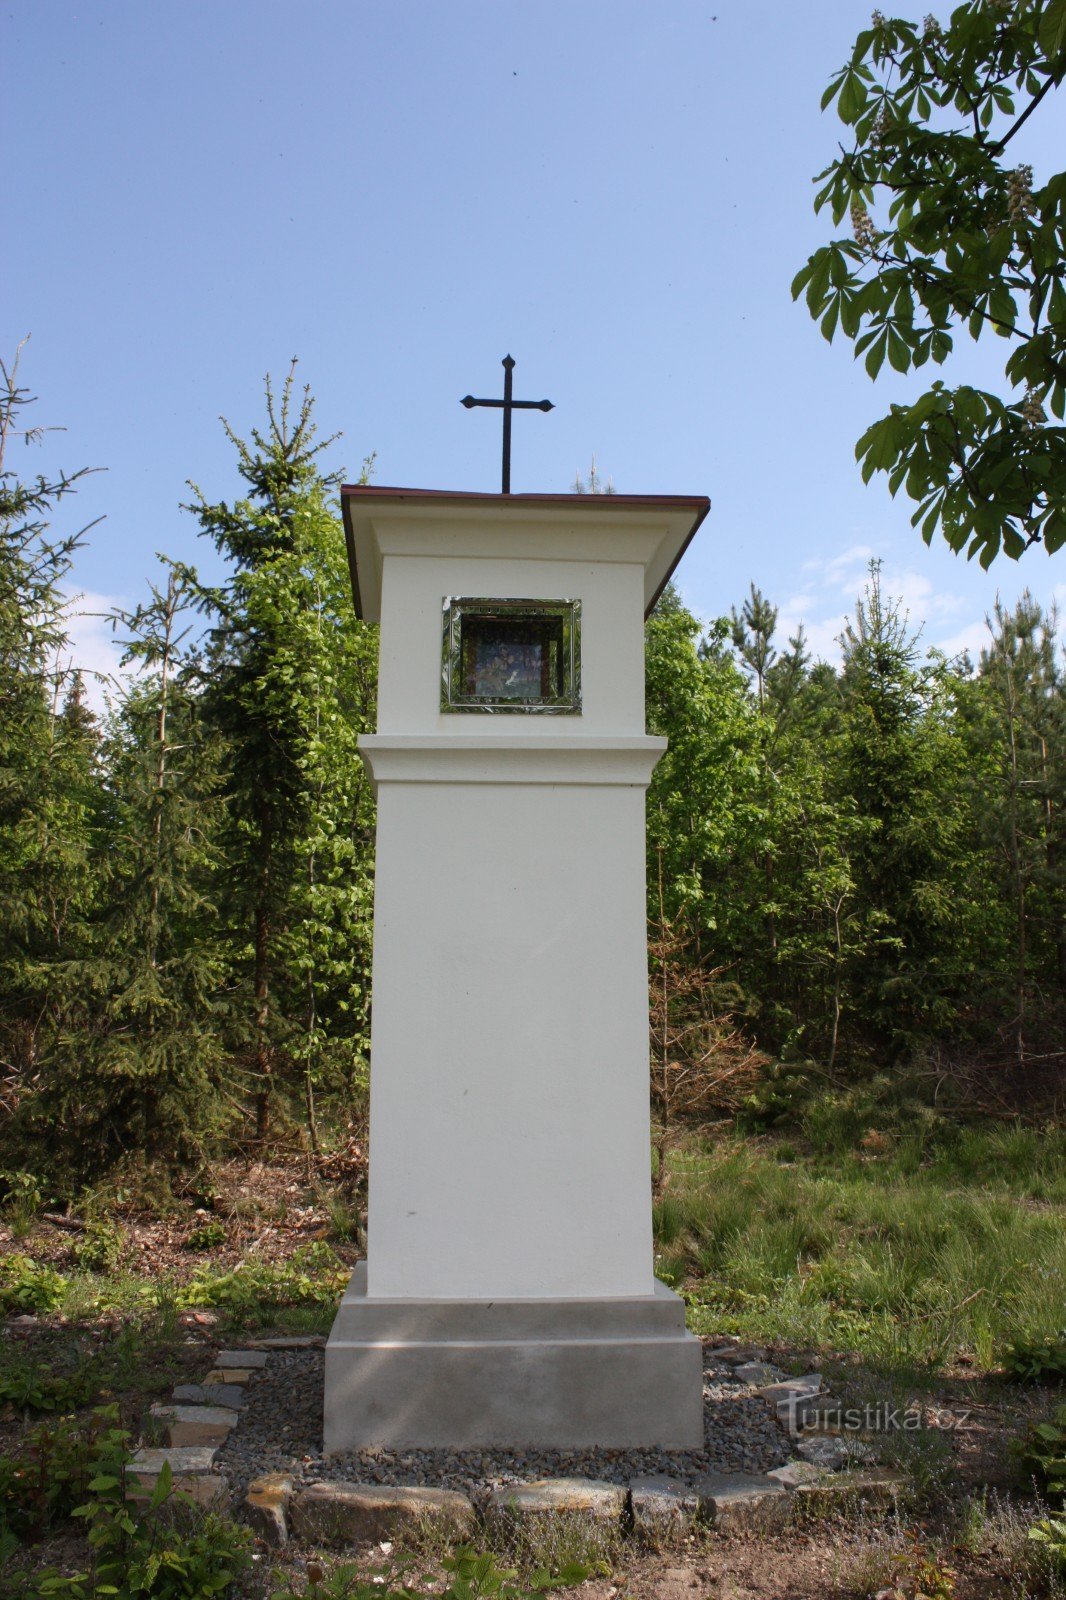 Cuộc khổ nạn của Chúa tại Holásková trong Quân khu Březina